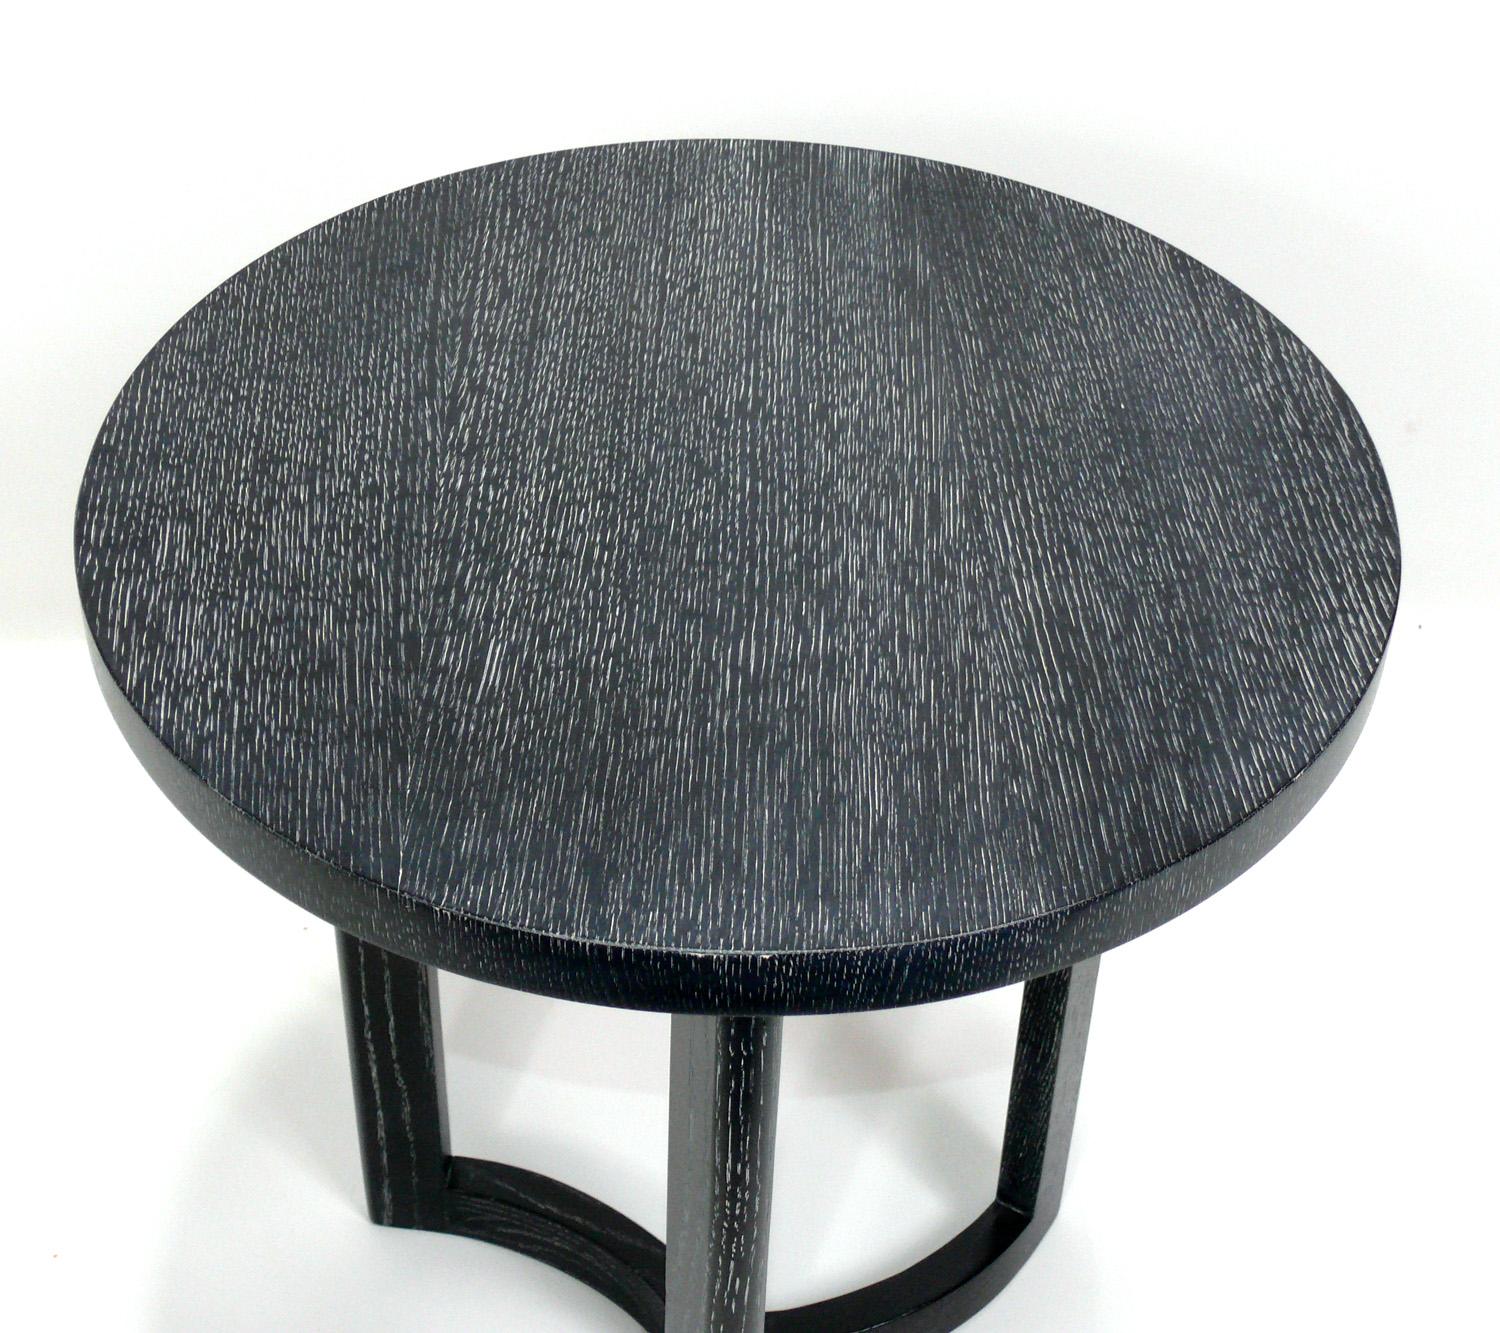 Elegante table d'appoint en chêne chaulé teinté noir, à la manière de Samuel Marx, Américain, vers les années 1940. De taille polyvalente, elle peut être utilisée comme table d'appoint ou d'appoint, ou entre deux chaises, ou encore comme table de